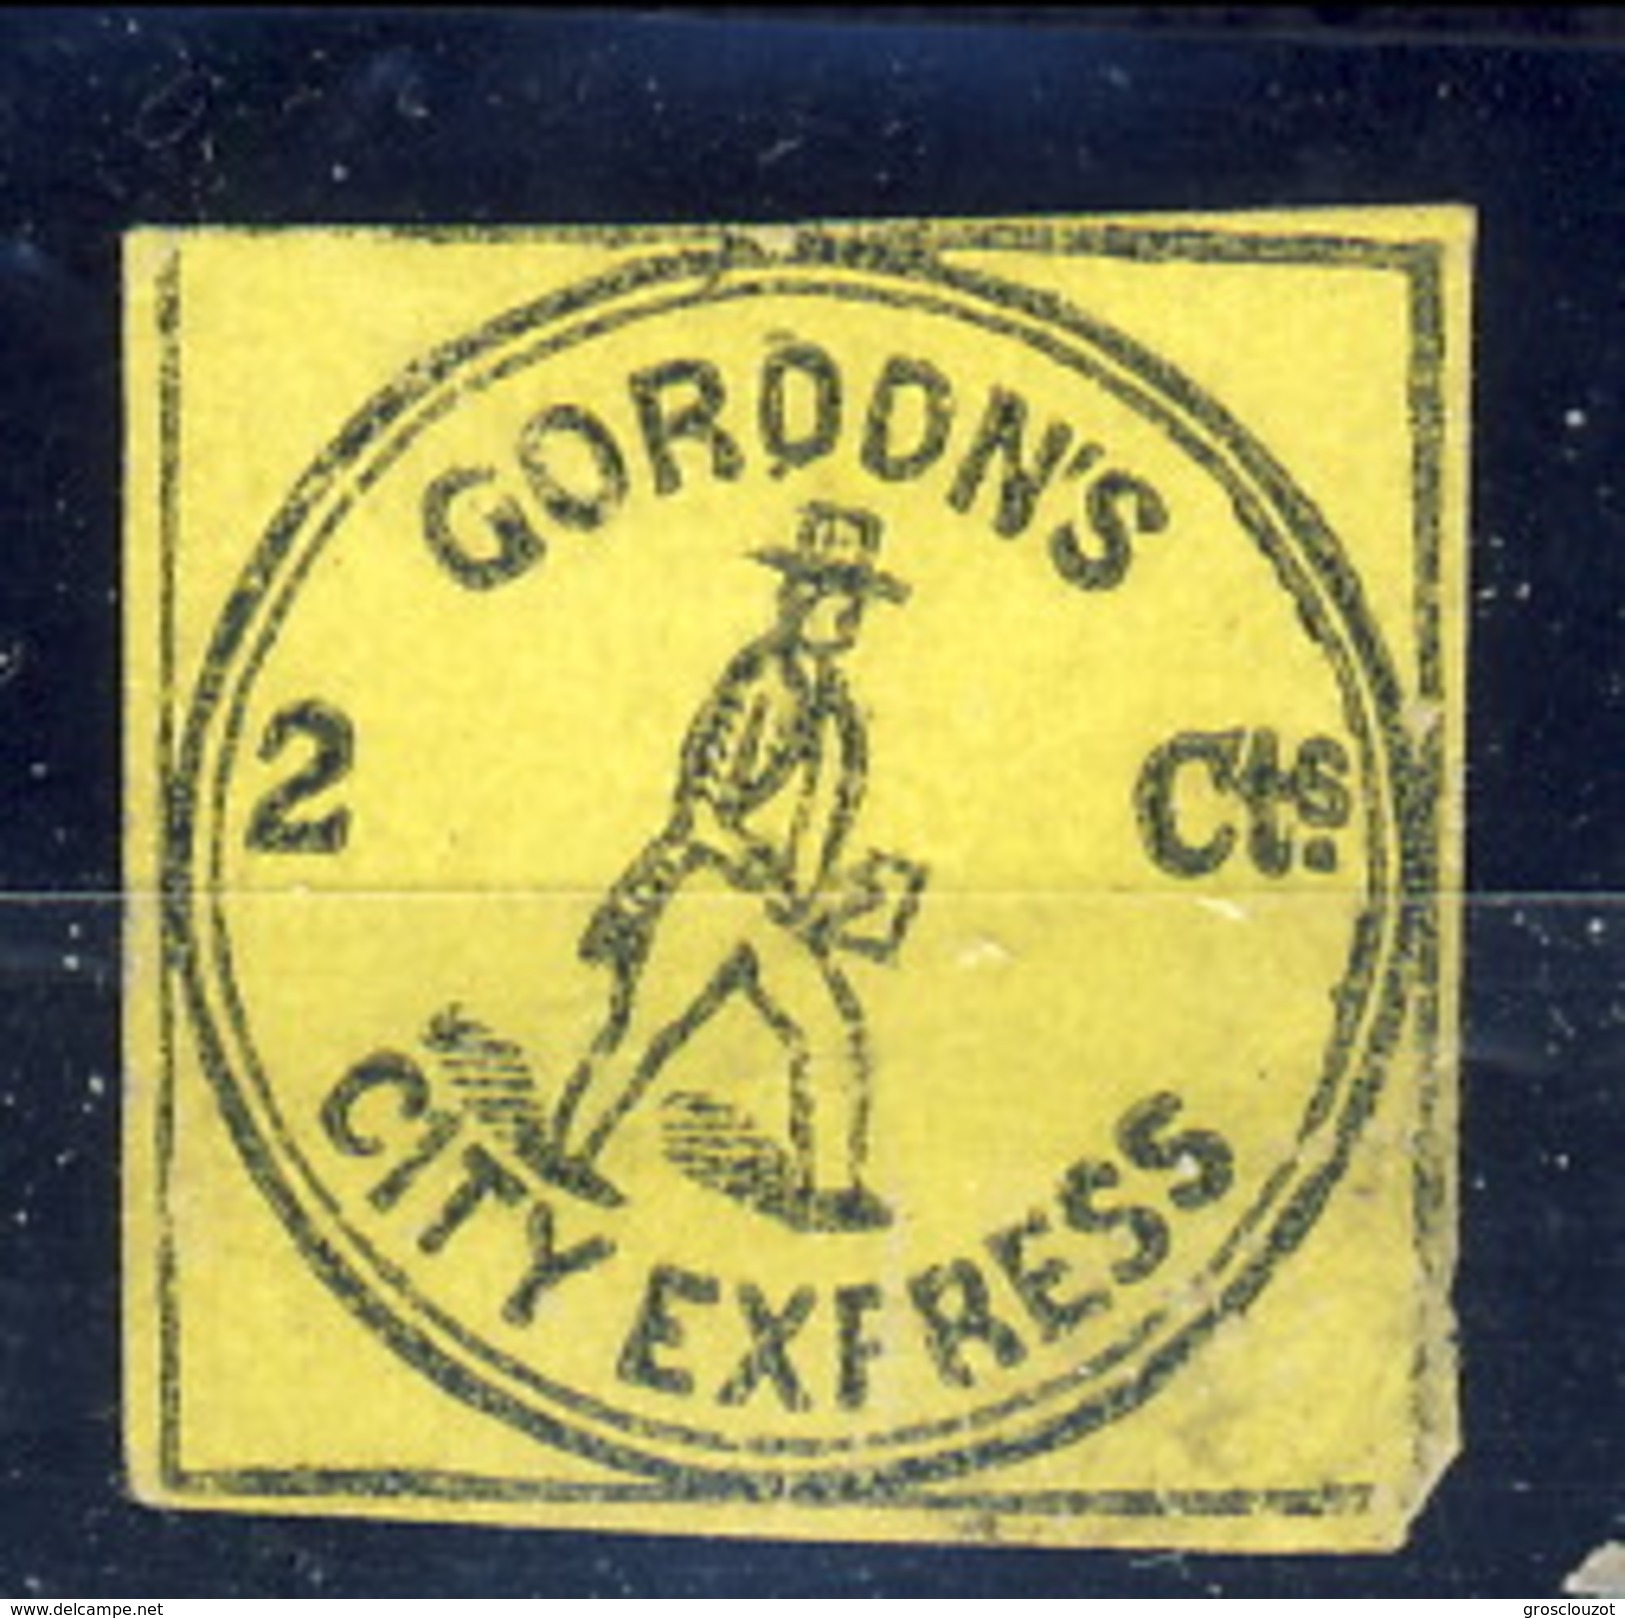 US Local 1848, Gordon's City Express 2 Cts Nero Su Giallo, New York, M - Postes Locales